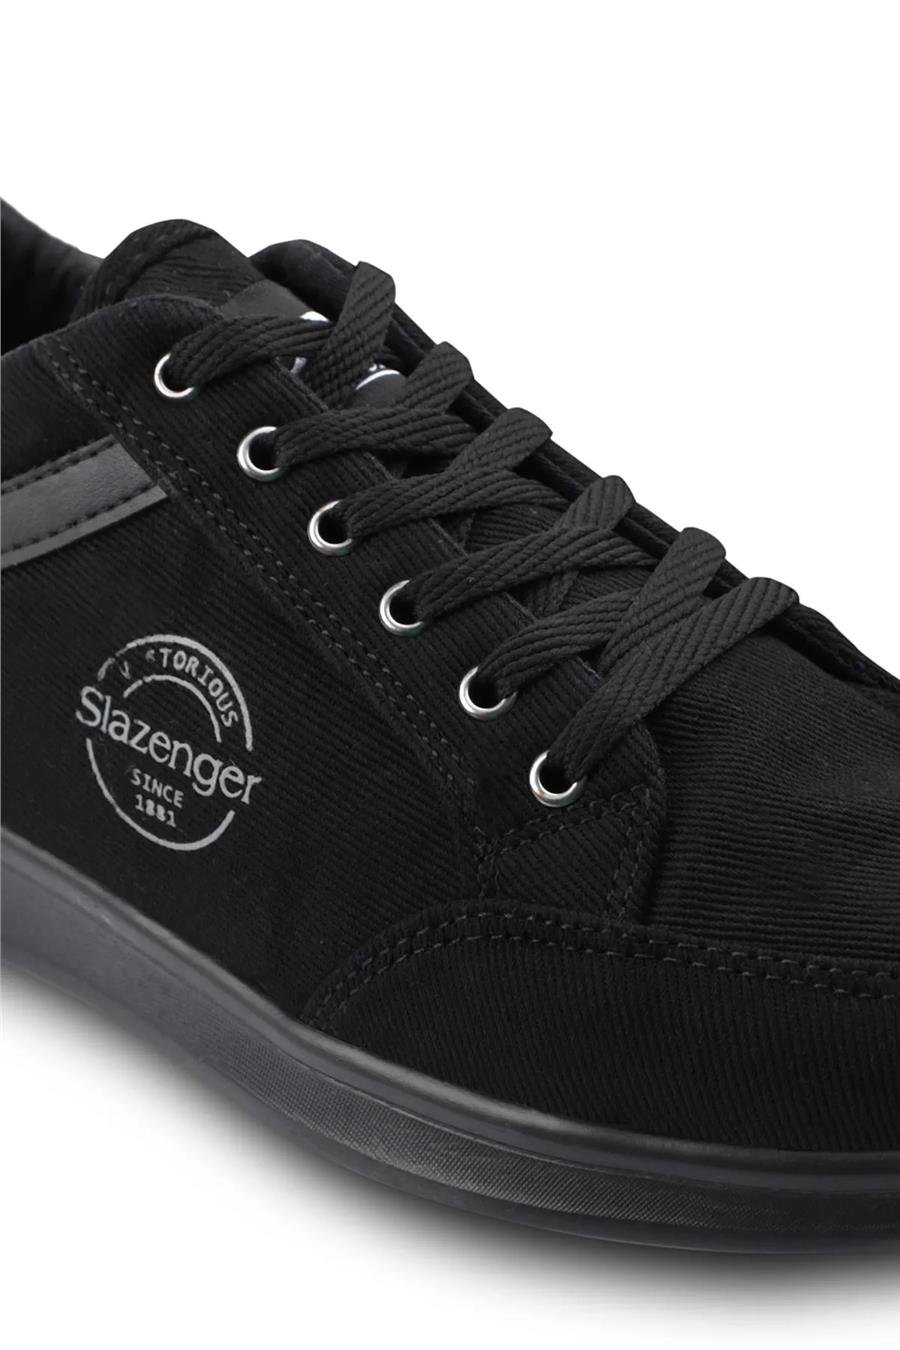 Slazenger Sa13Le051-596 Daniyah-Siyah / Siyah Erkek Günlük Ayakkabı